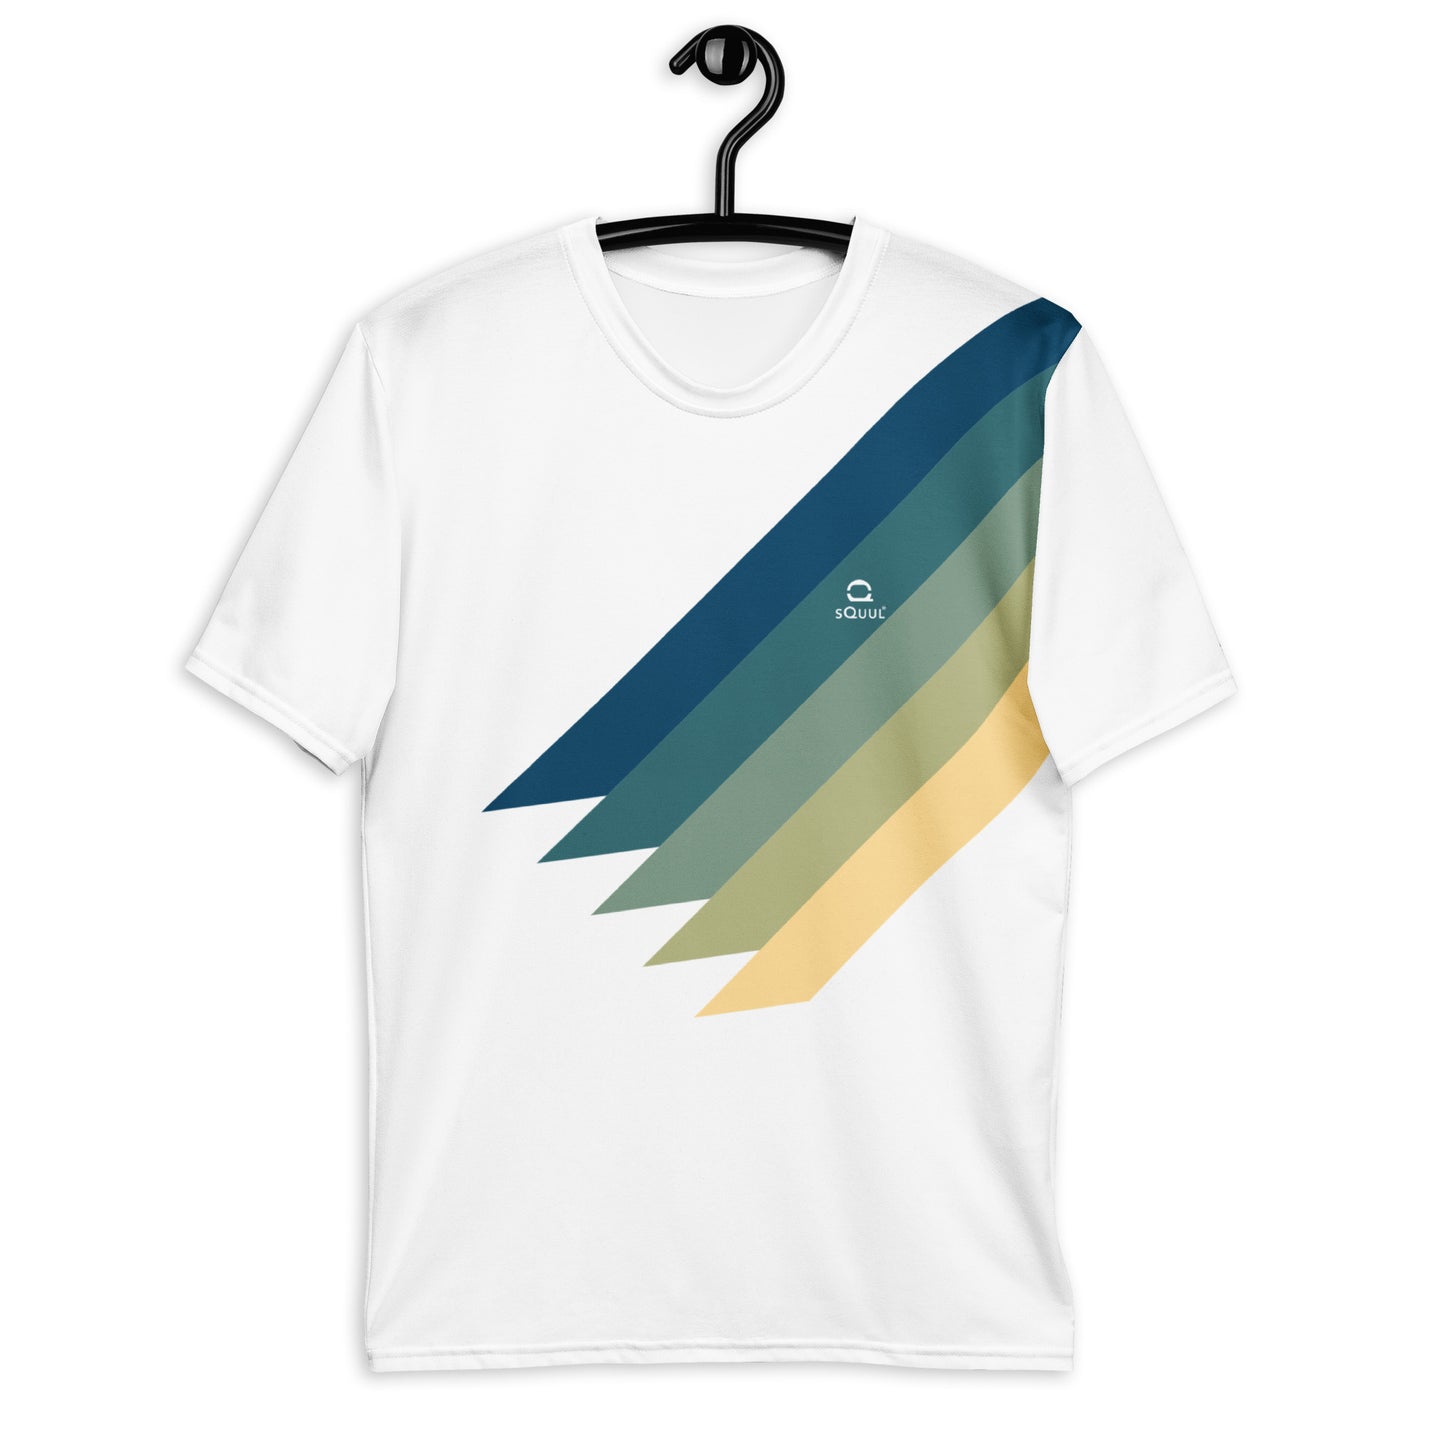 T-Shirt Colorflow 2 #SquulOfColors